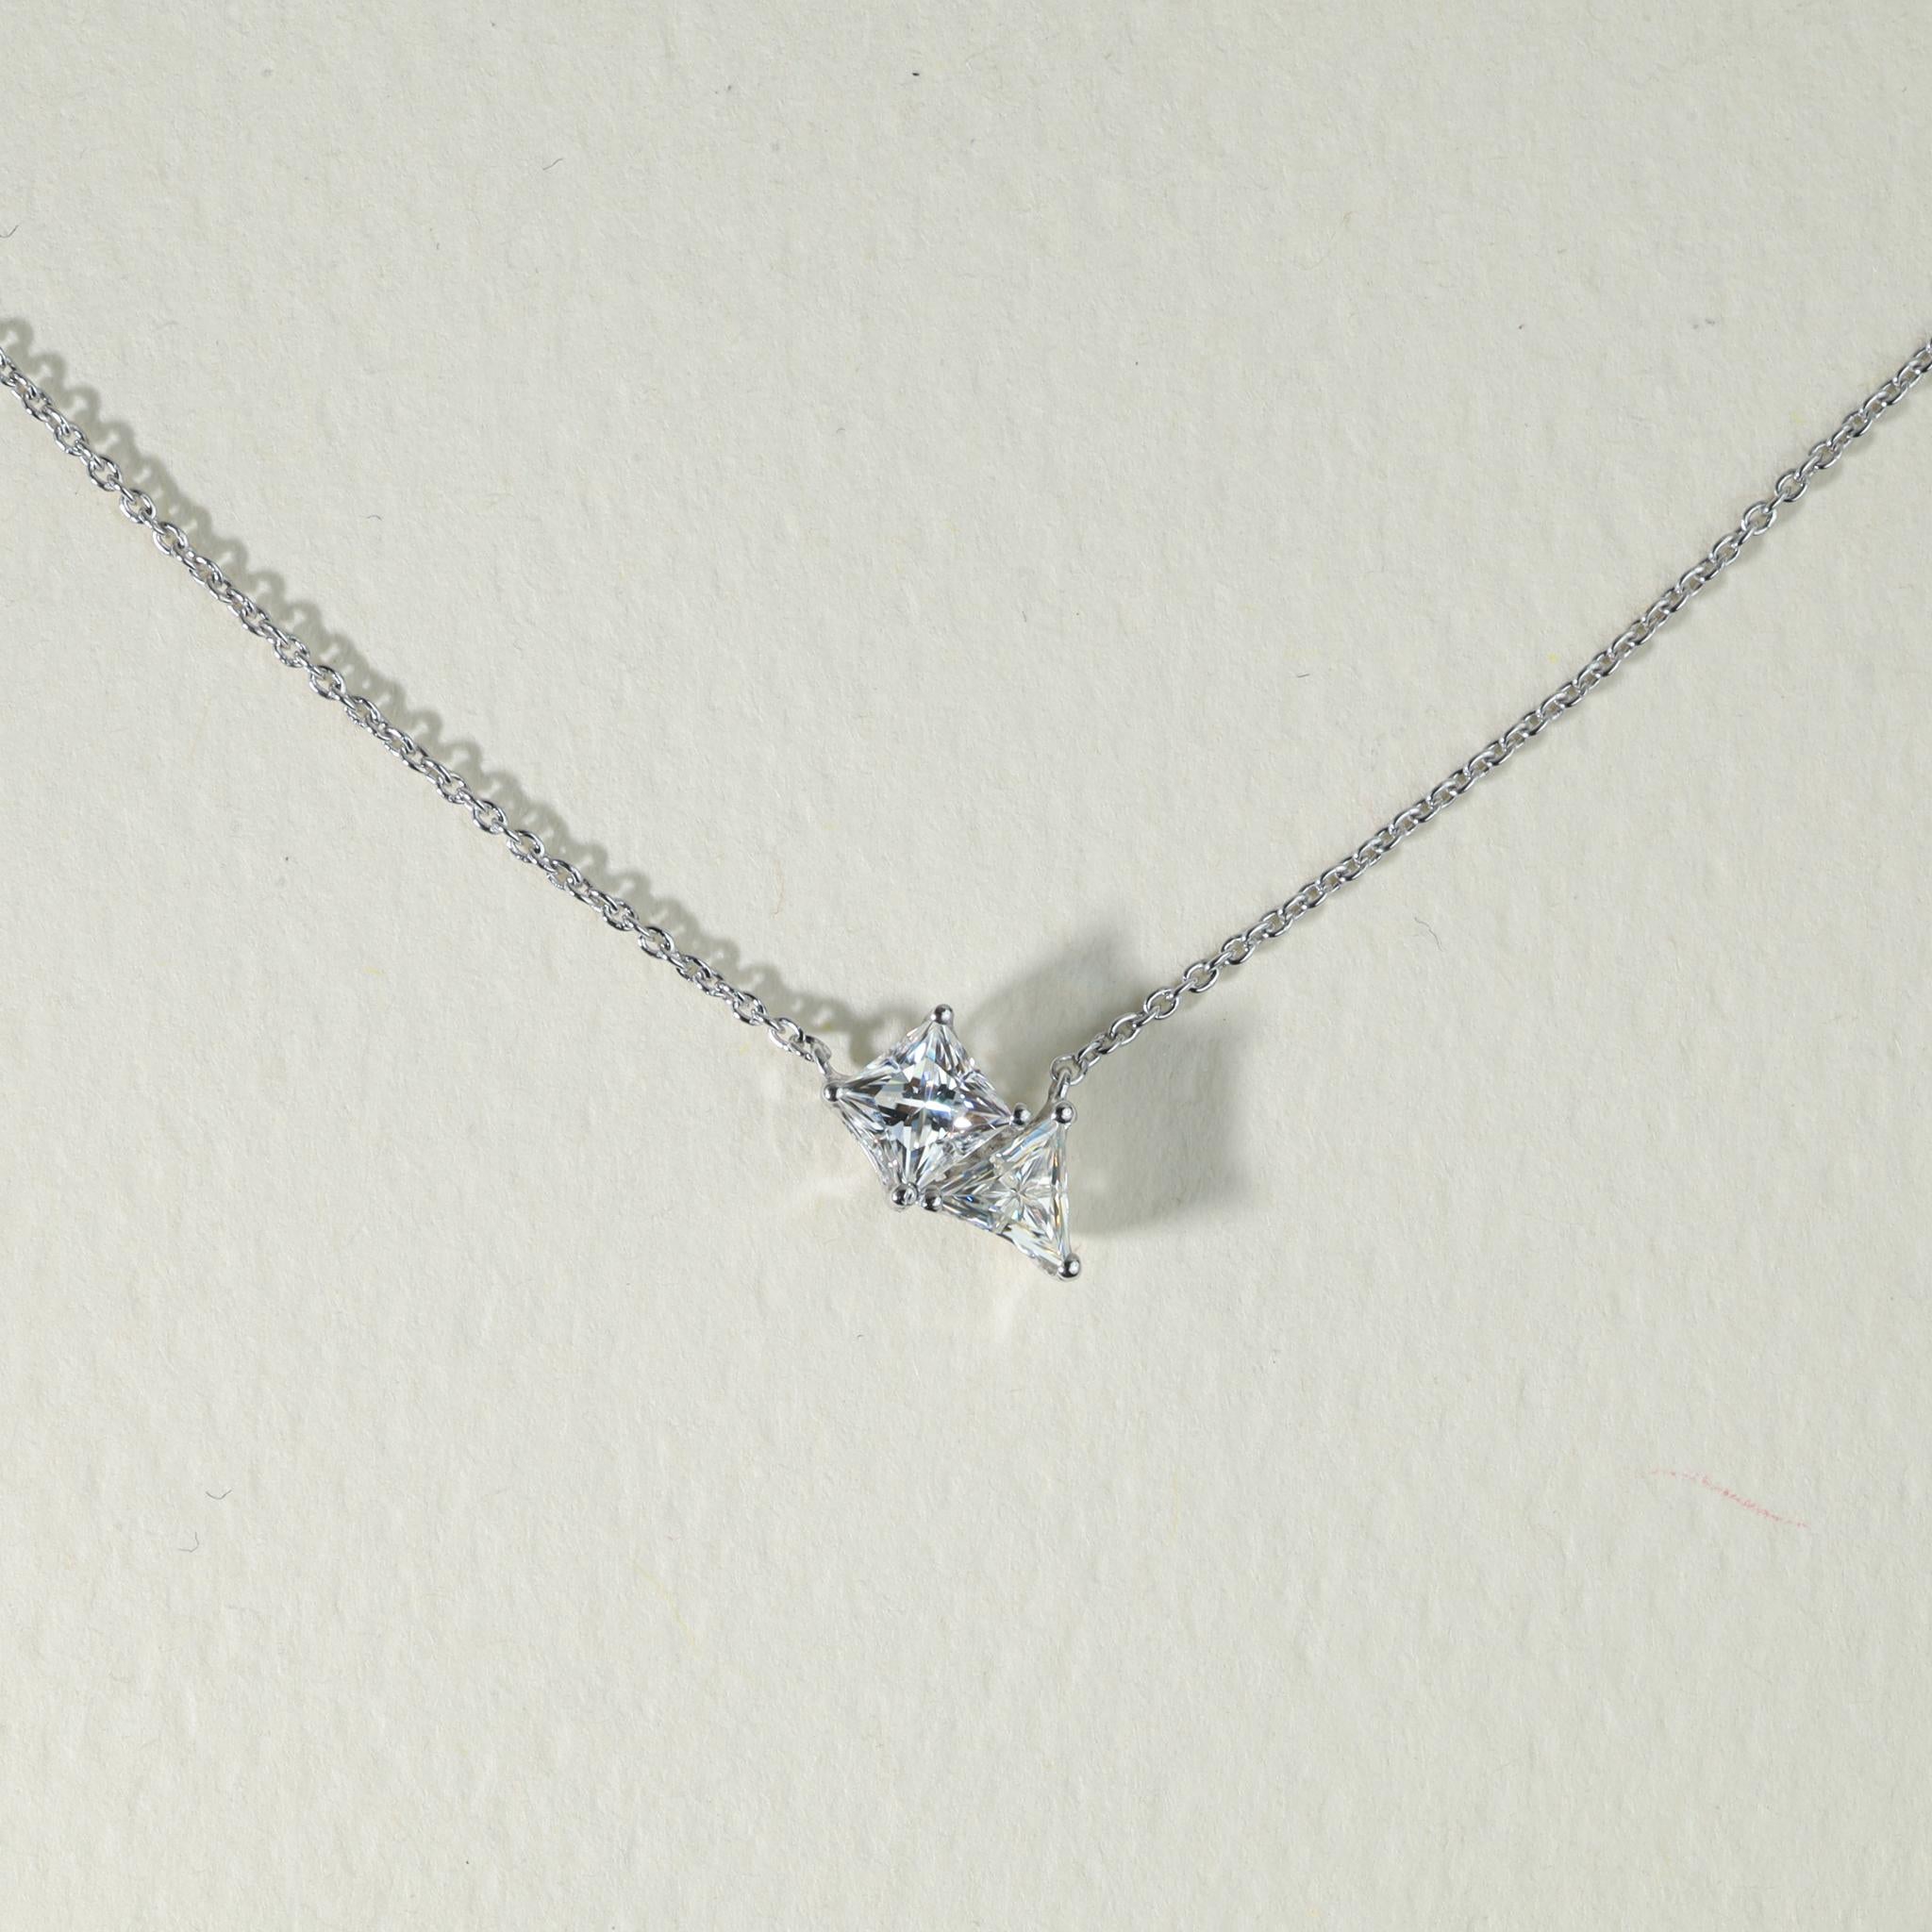 GIA Report Certified 0.75 Carats Princesse Triangle Diamond Pendant Necklace

Disponible en or blanc 18k.

Le même design peut être réalisé avec d'autres pierres précieuses sur demande.

Détails du produit :

- Or massif

- Pierre principale -